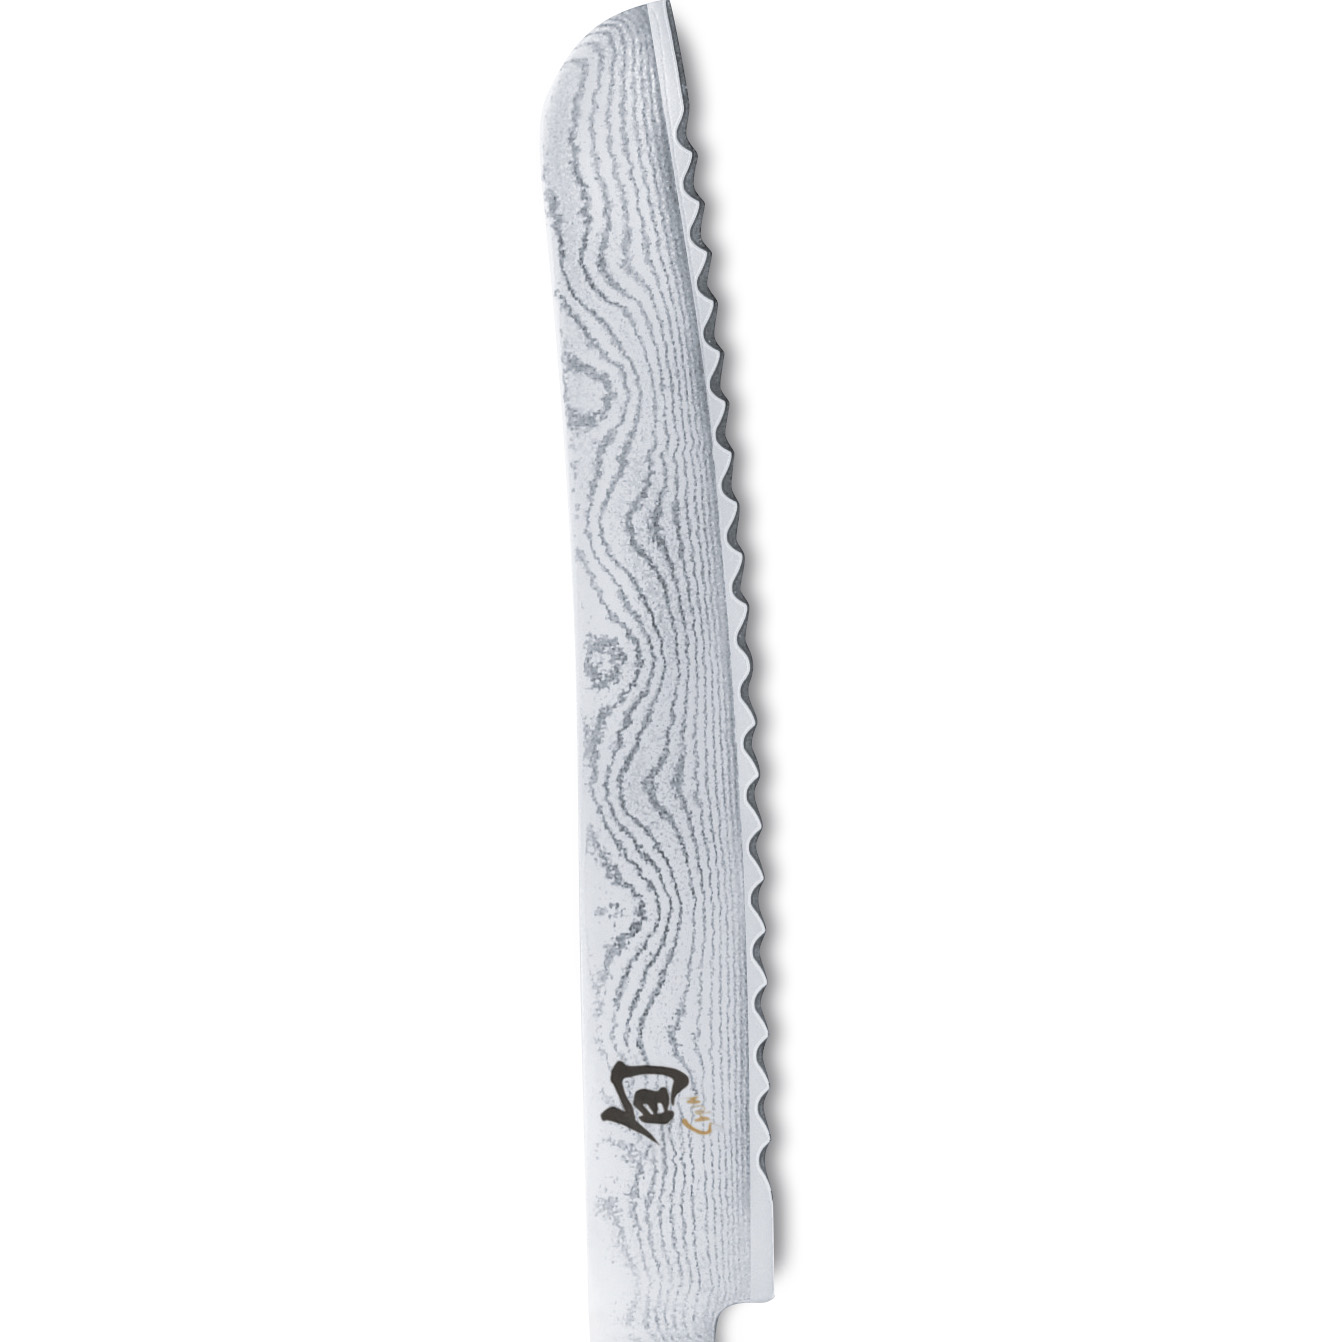 KAI Shun White Brotmesser DM-0705W Griff